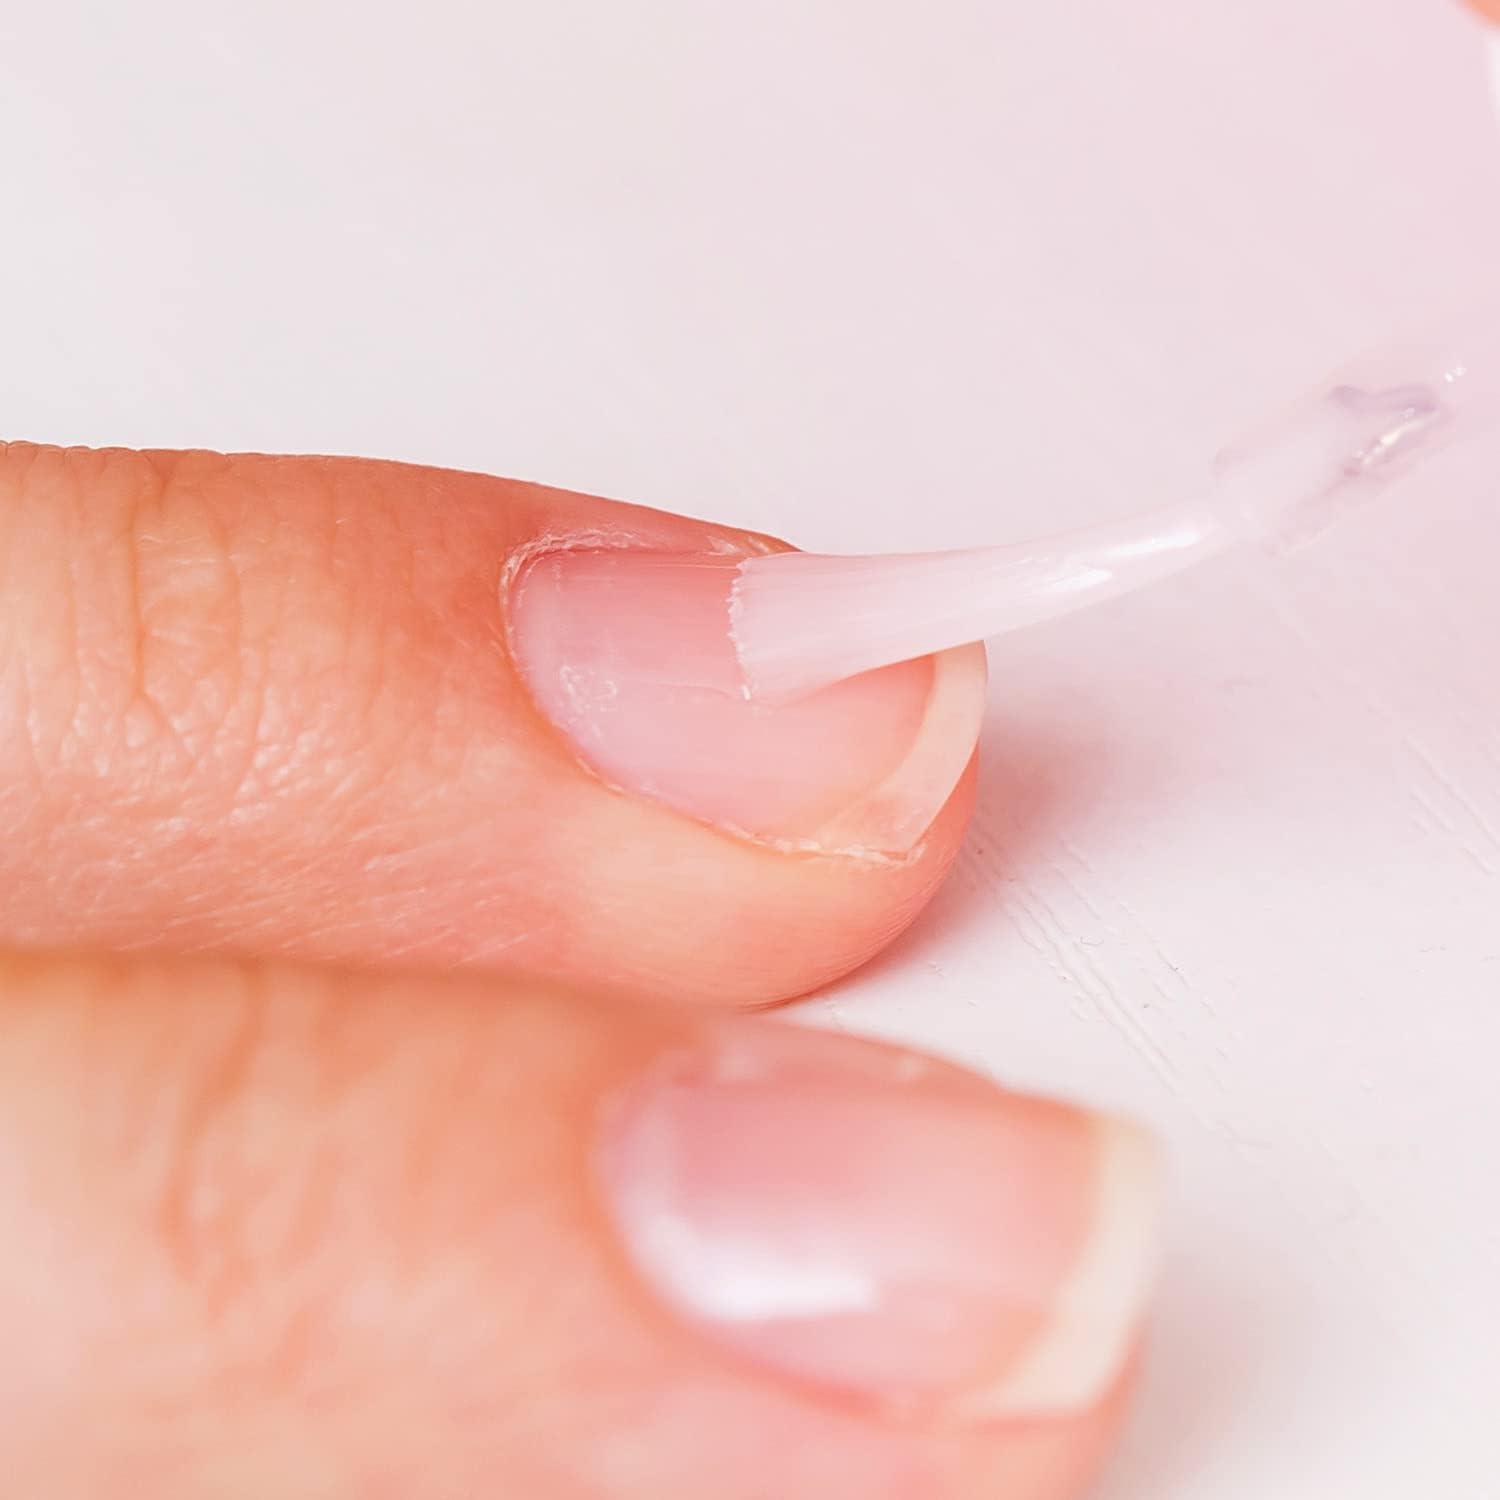 Should You Use Nail Polish to Stop Nail Biting? - It's Free At Last